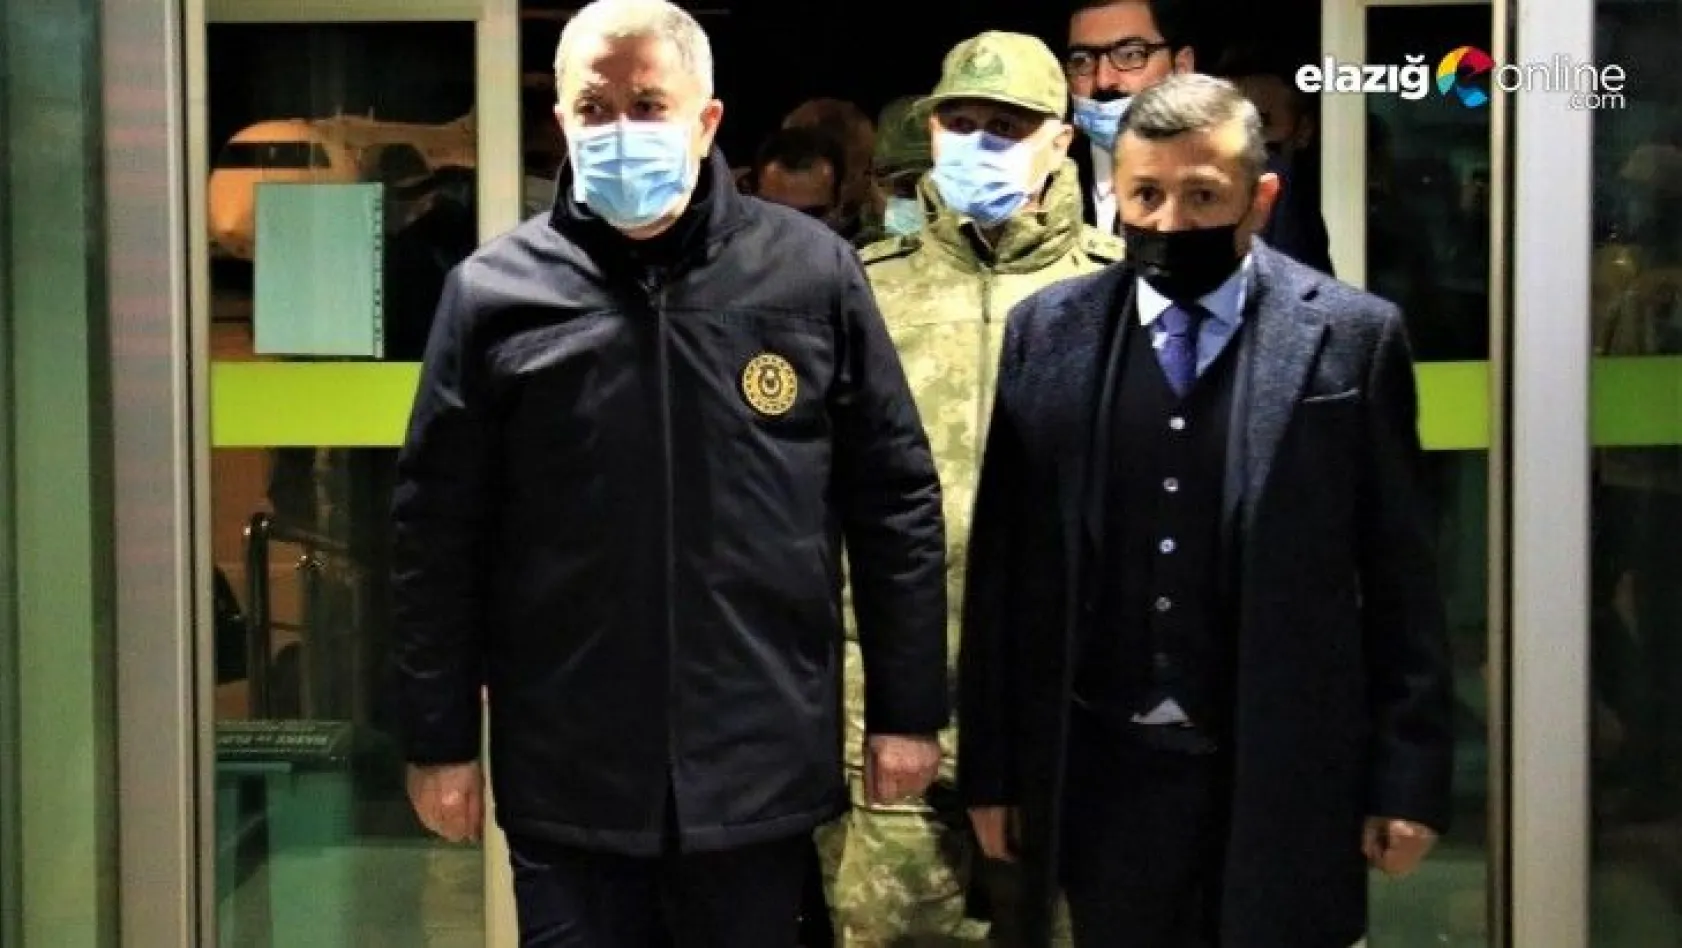 Milli Savunma Bakanı Hulusi Akar, Elazığ'da